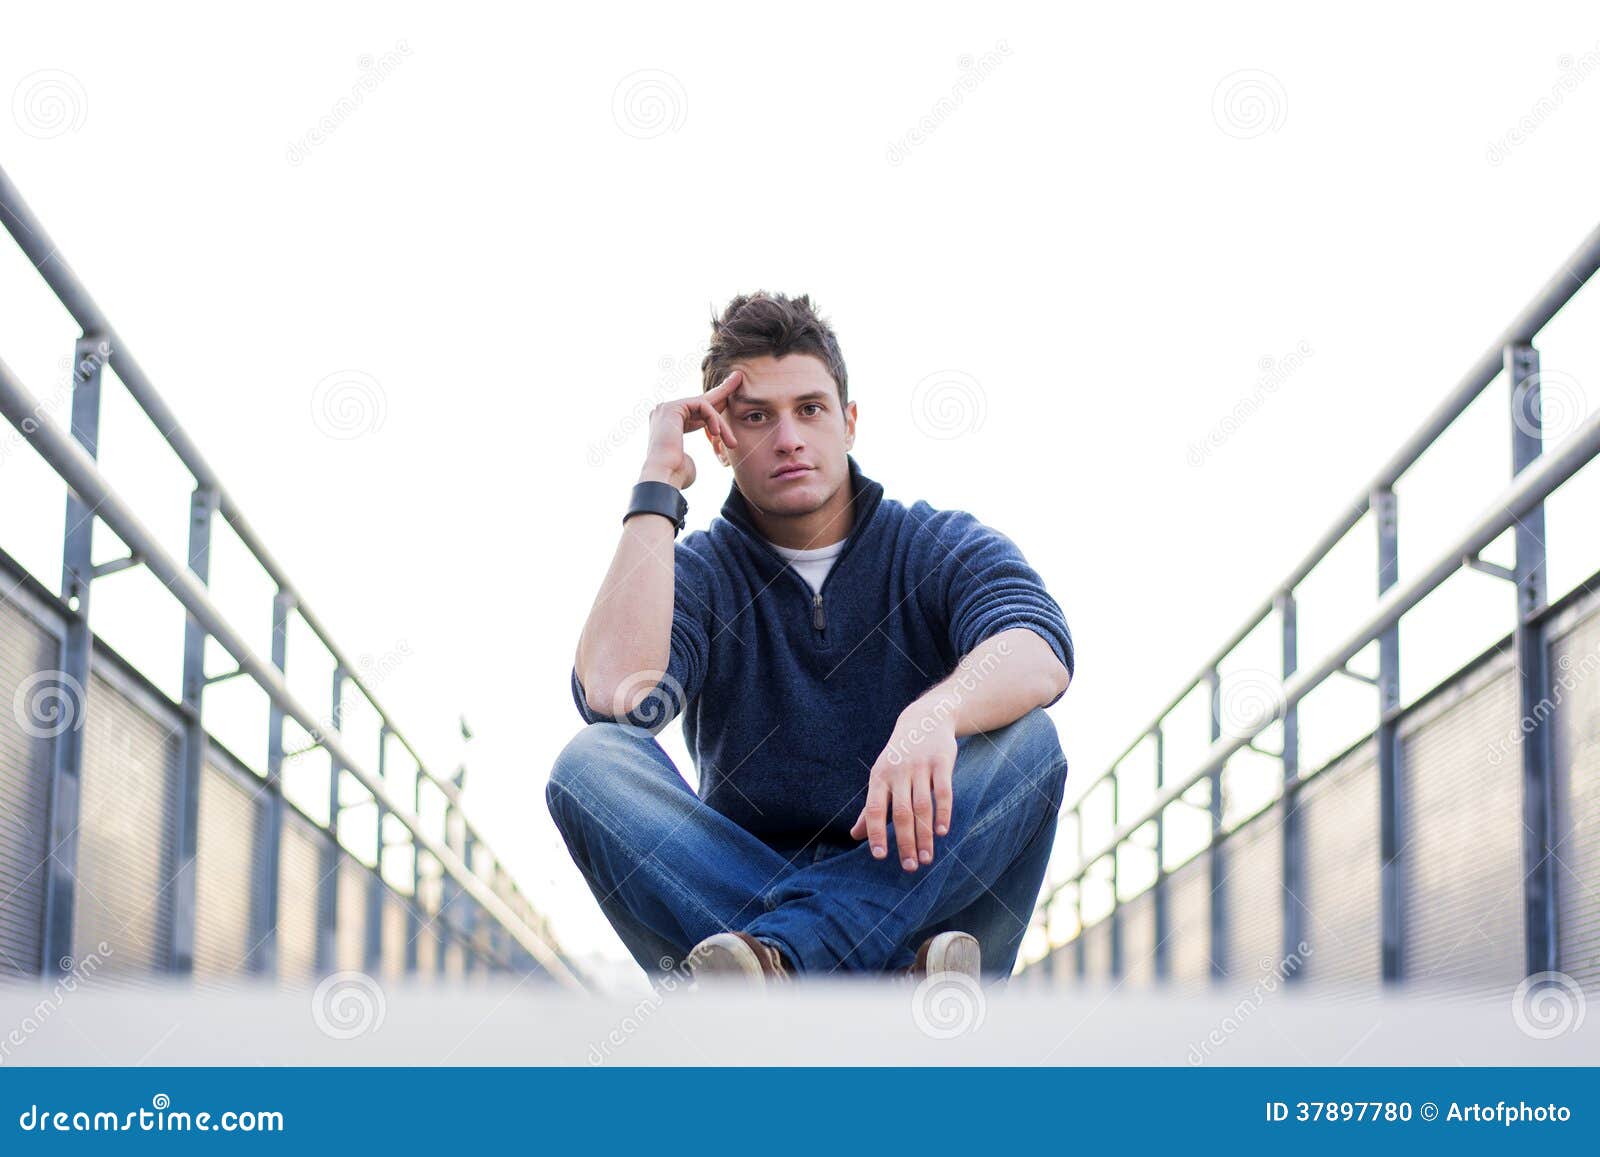 handsome young man sitting between handrails in walkway